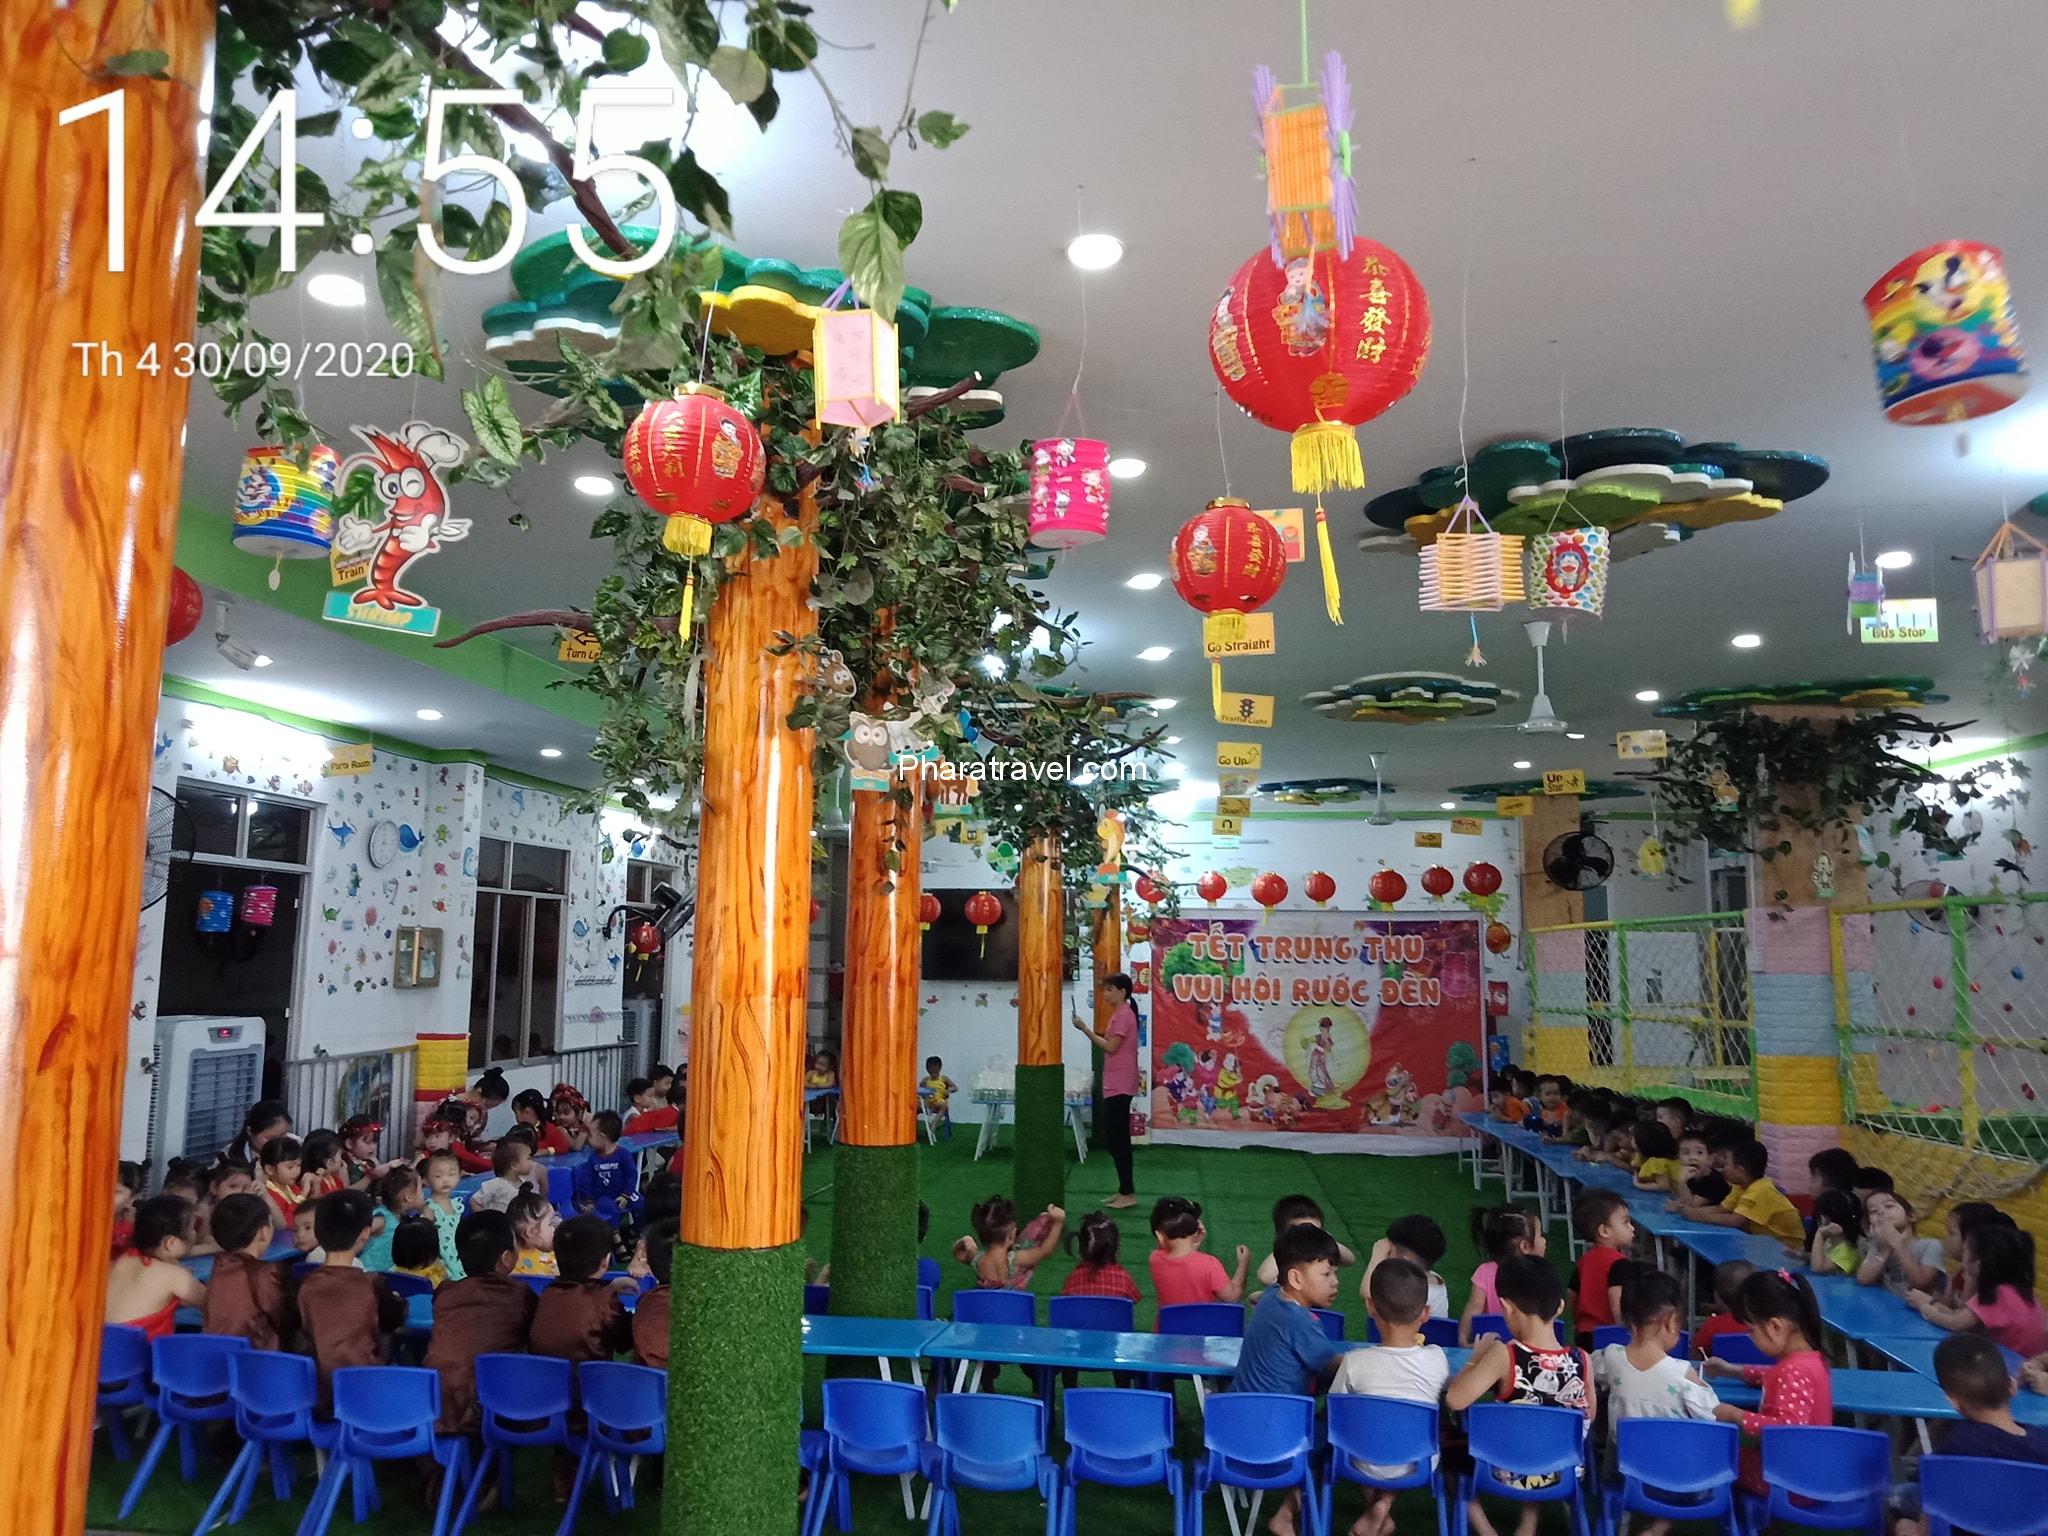 Top 20 trường mầm non Ninh Thuận được ba mẹ tin chọn 5 sao